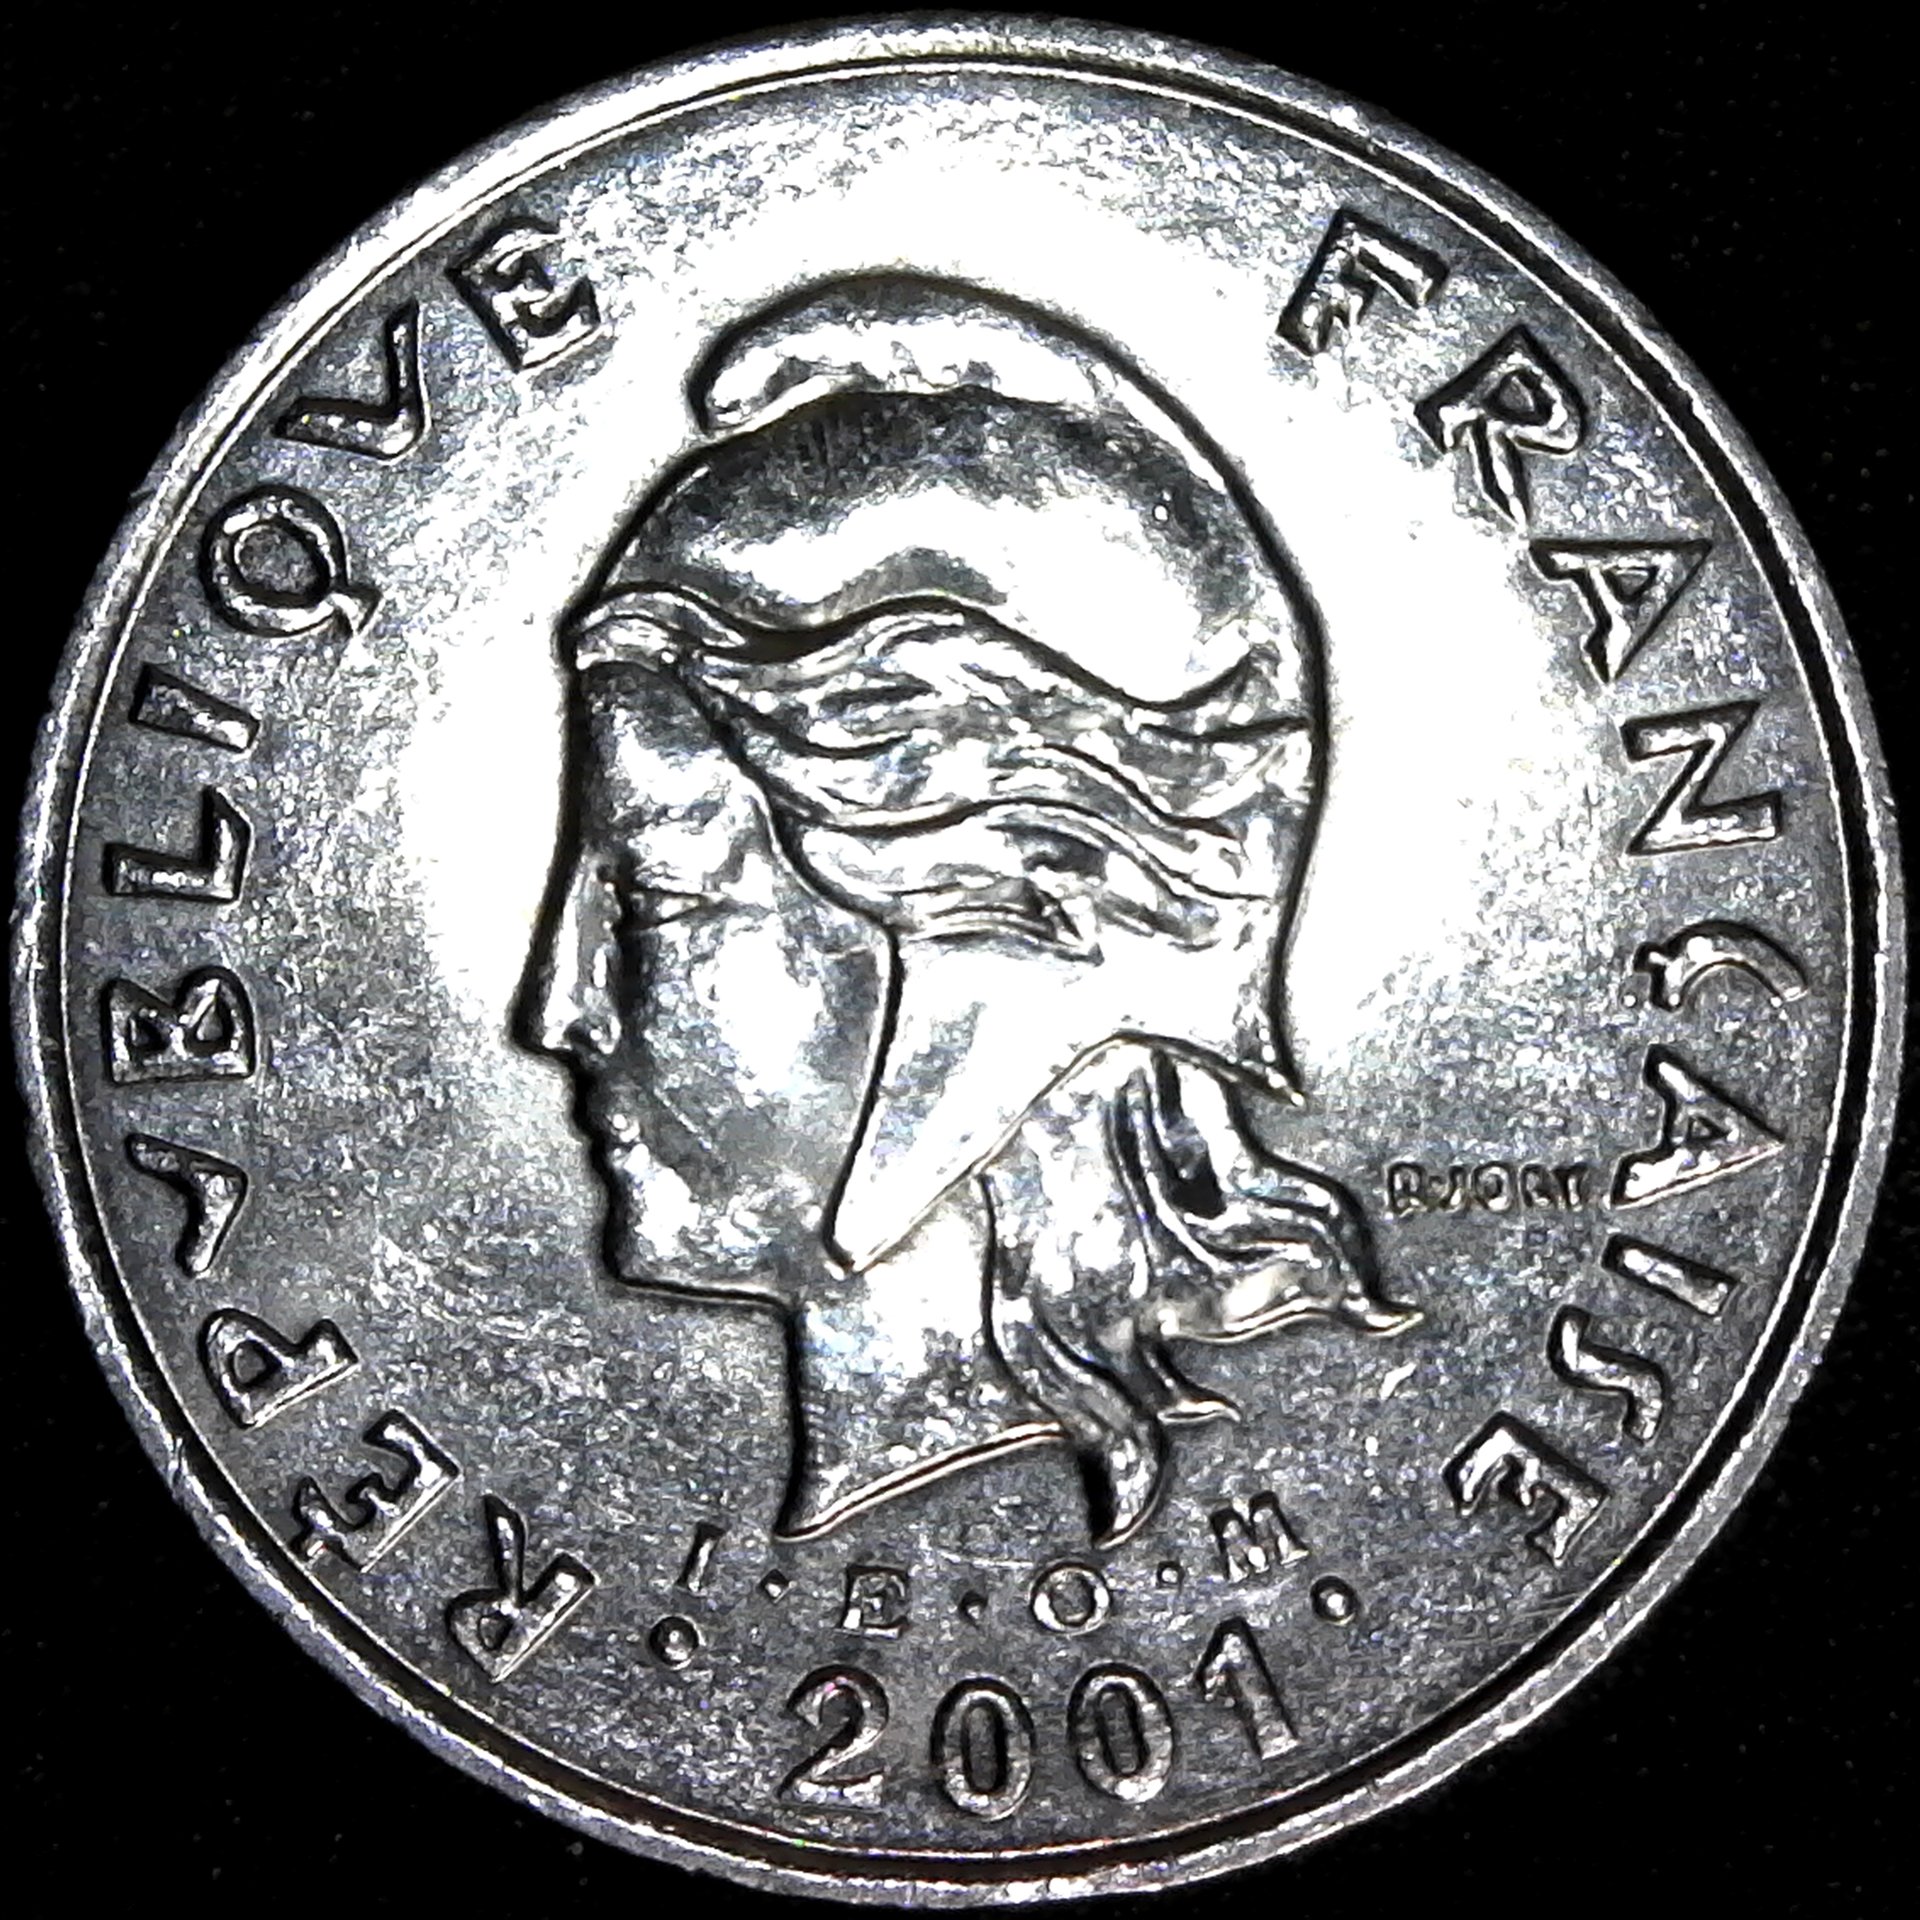 French Polynesia 50 Francs 2001 IEOM rev.jpg